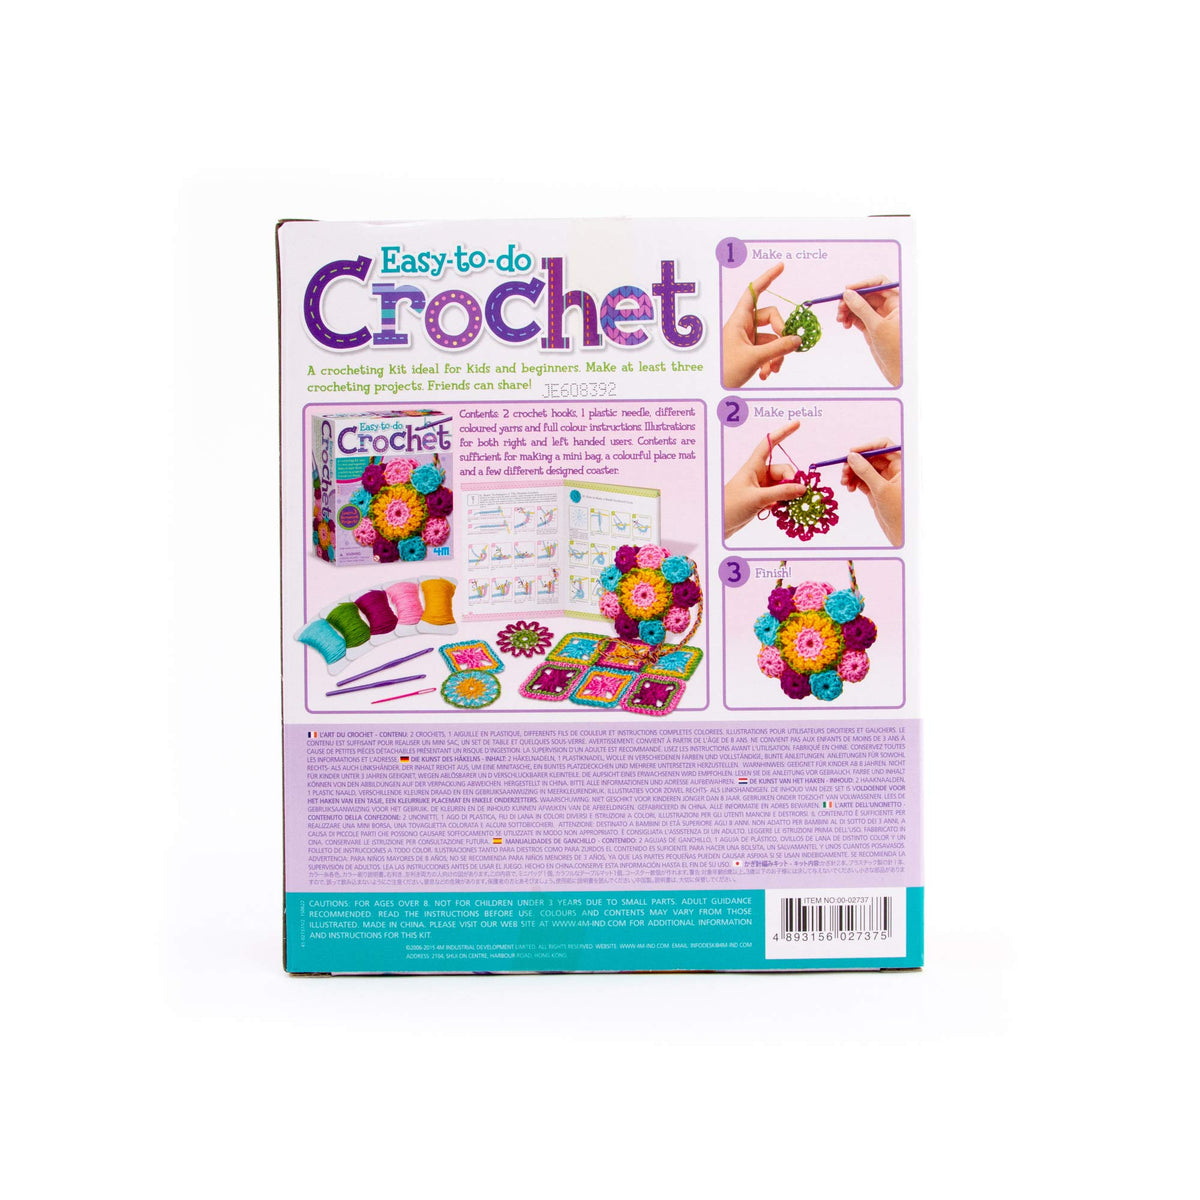 DIY Mini Crochet Kit beginner's Crochet Kit for All Ages Includes